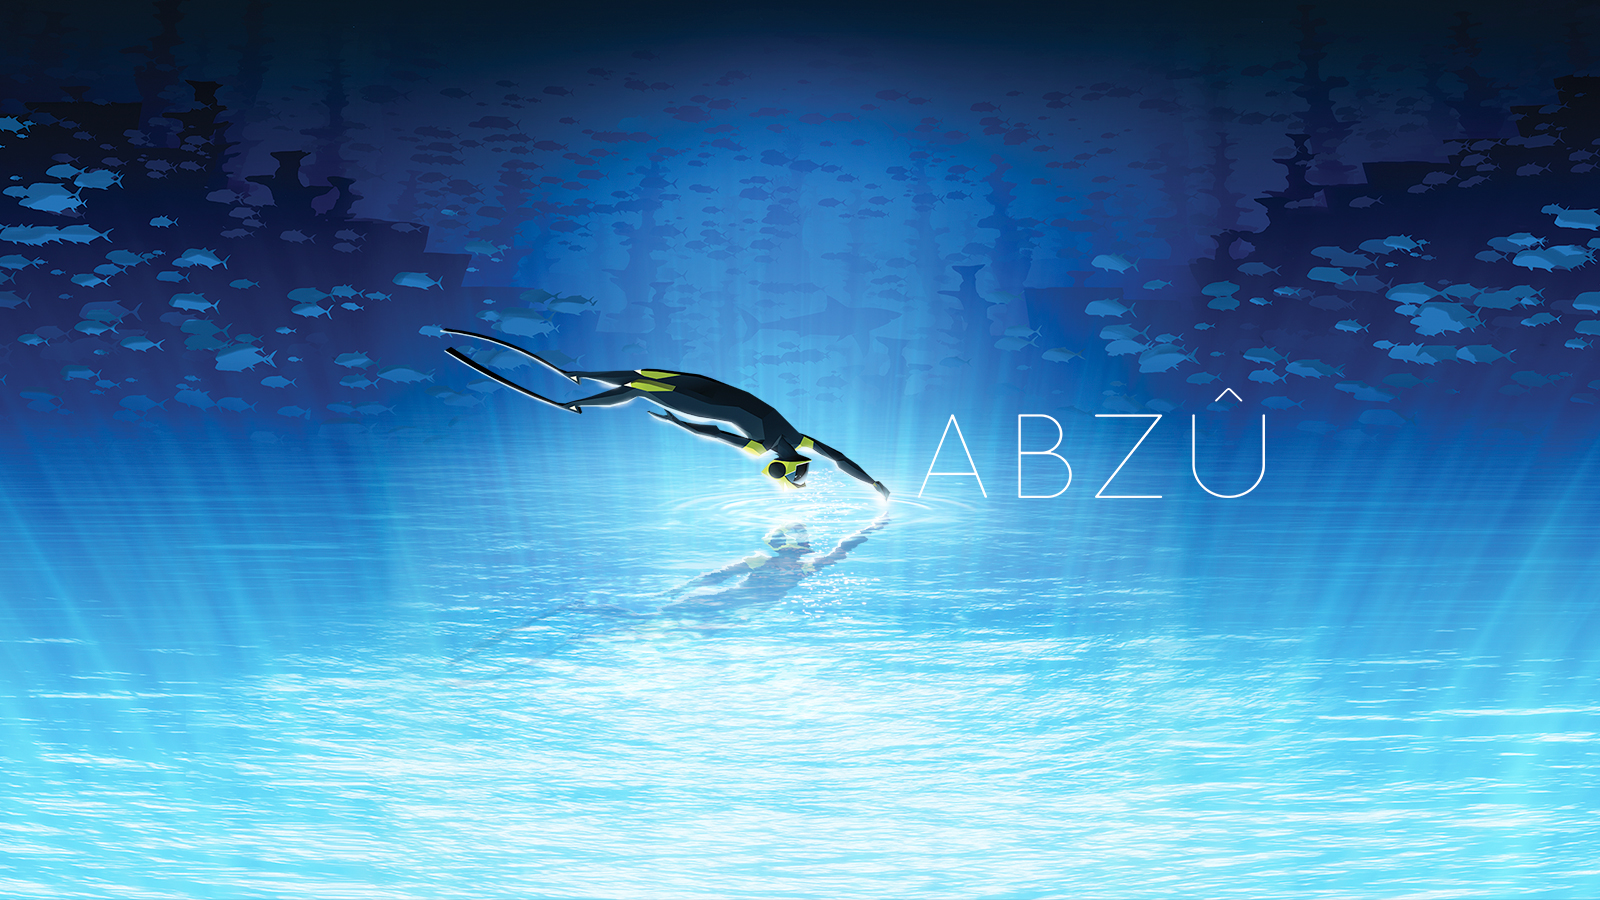 Abzu HD wallpapers, Desktop wallpaper - most viewed